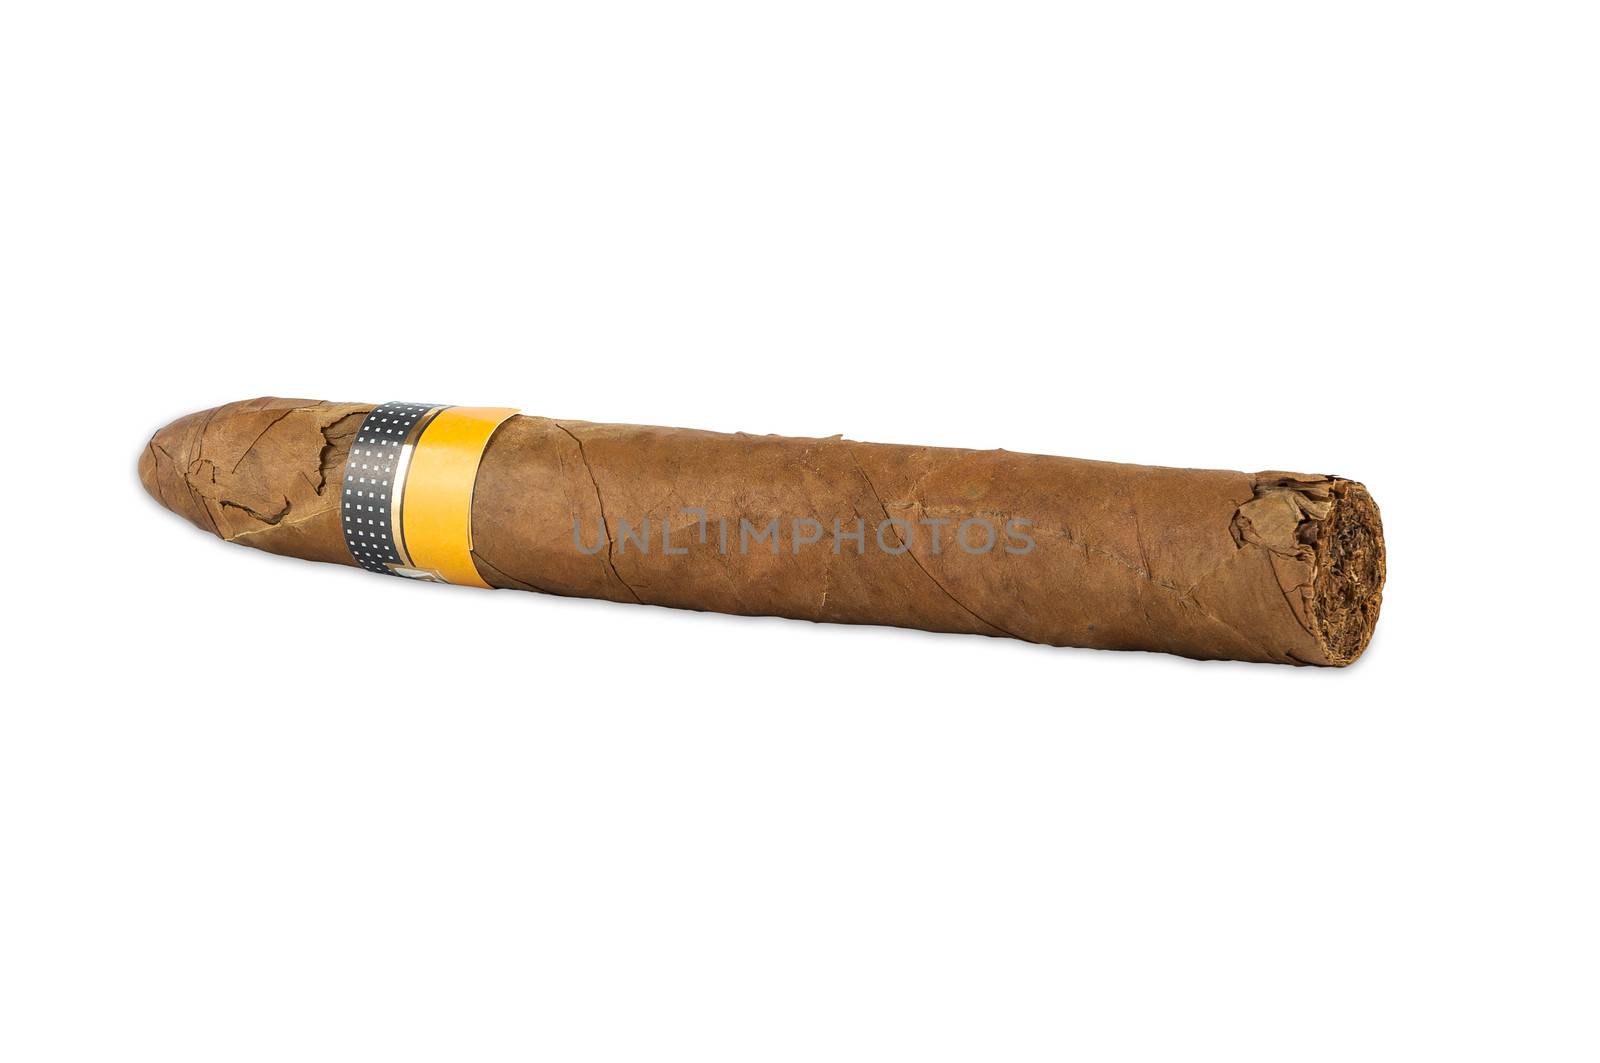 Cuban cigar by mkos83